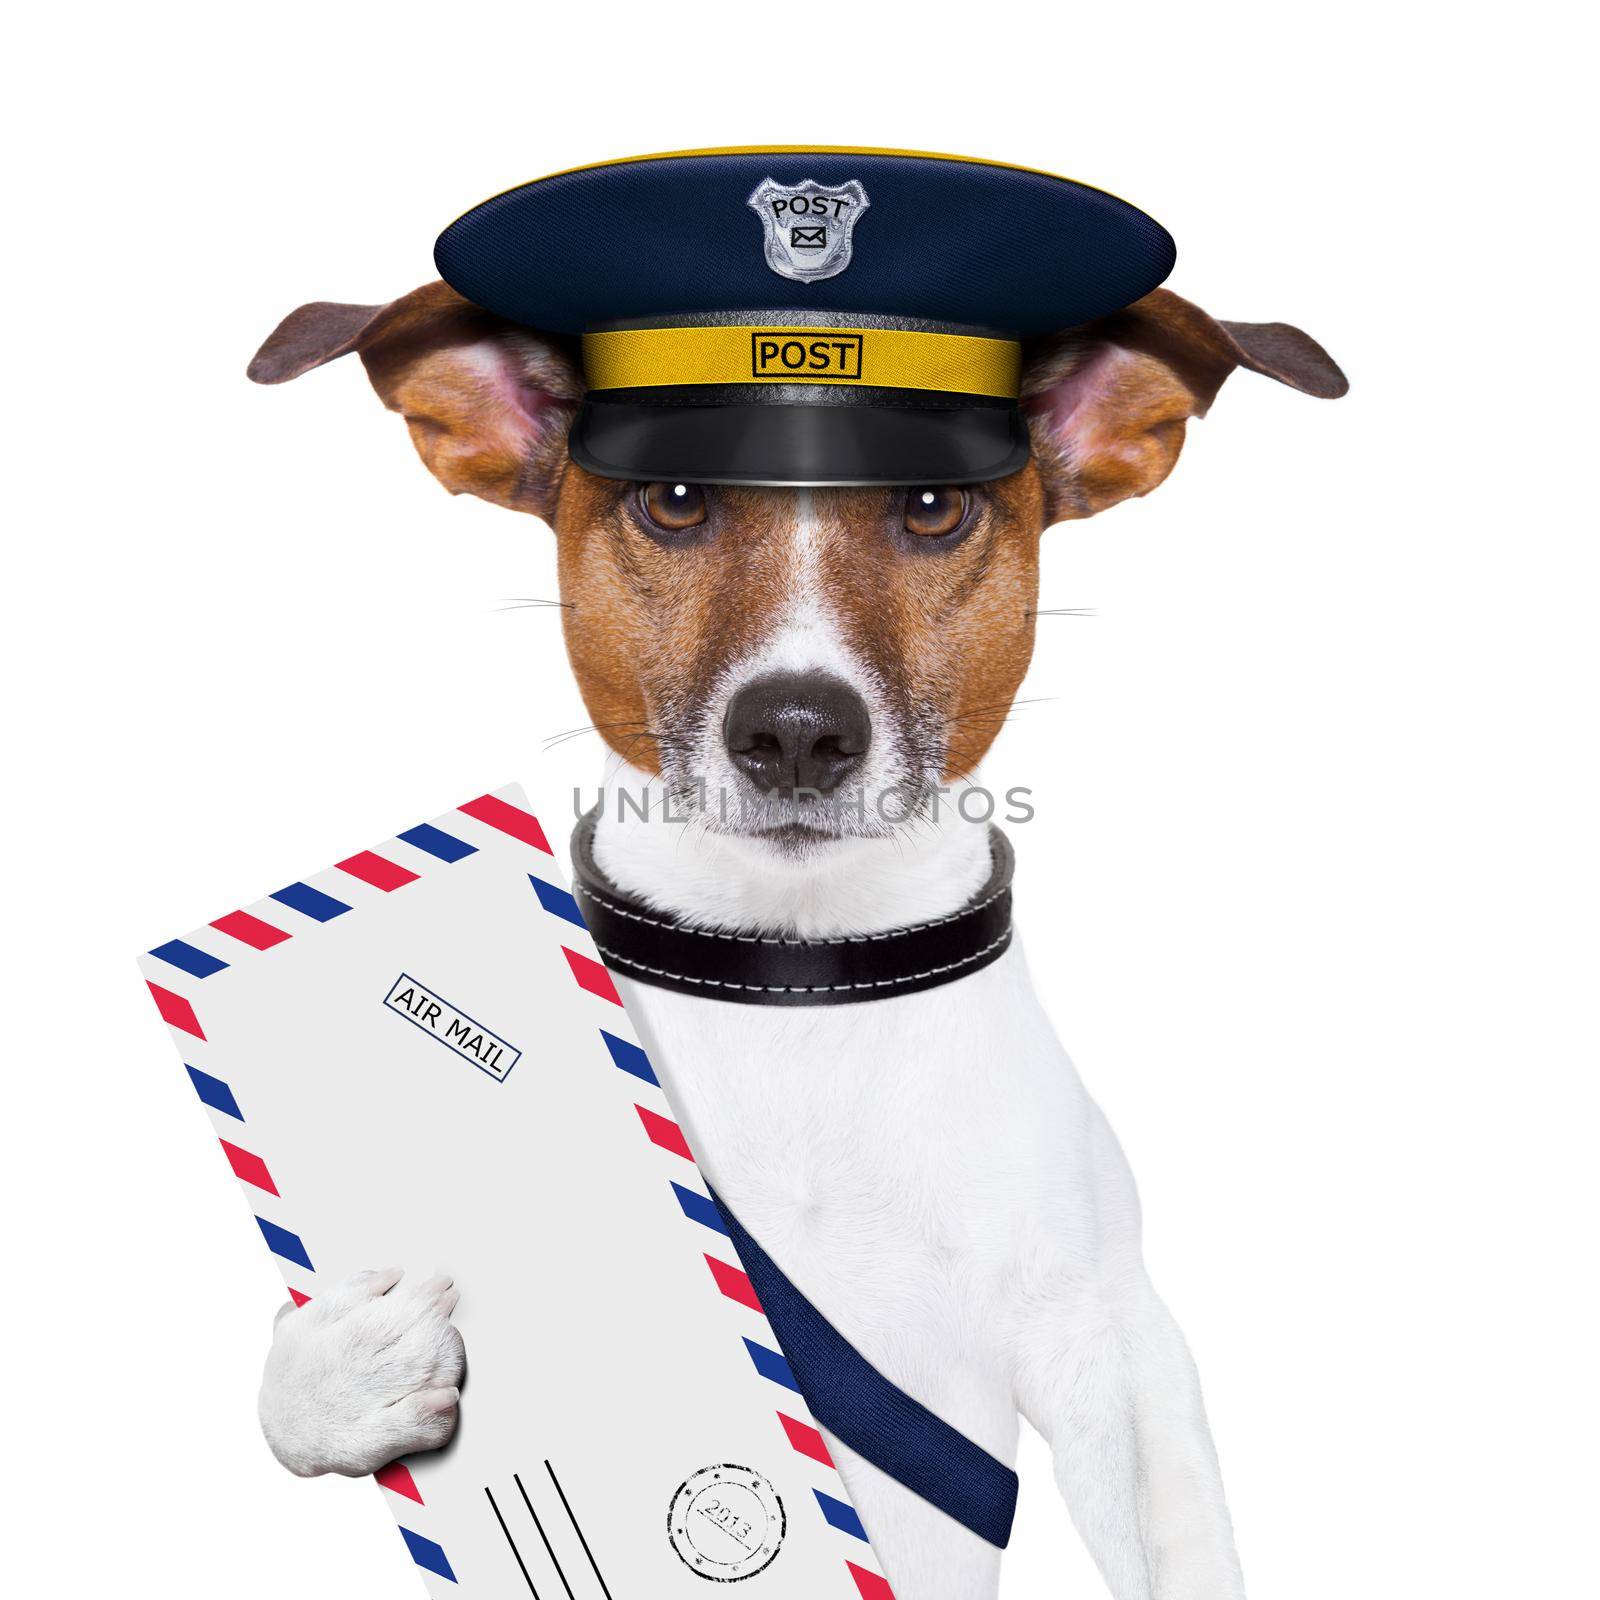 mail dog by Brosch